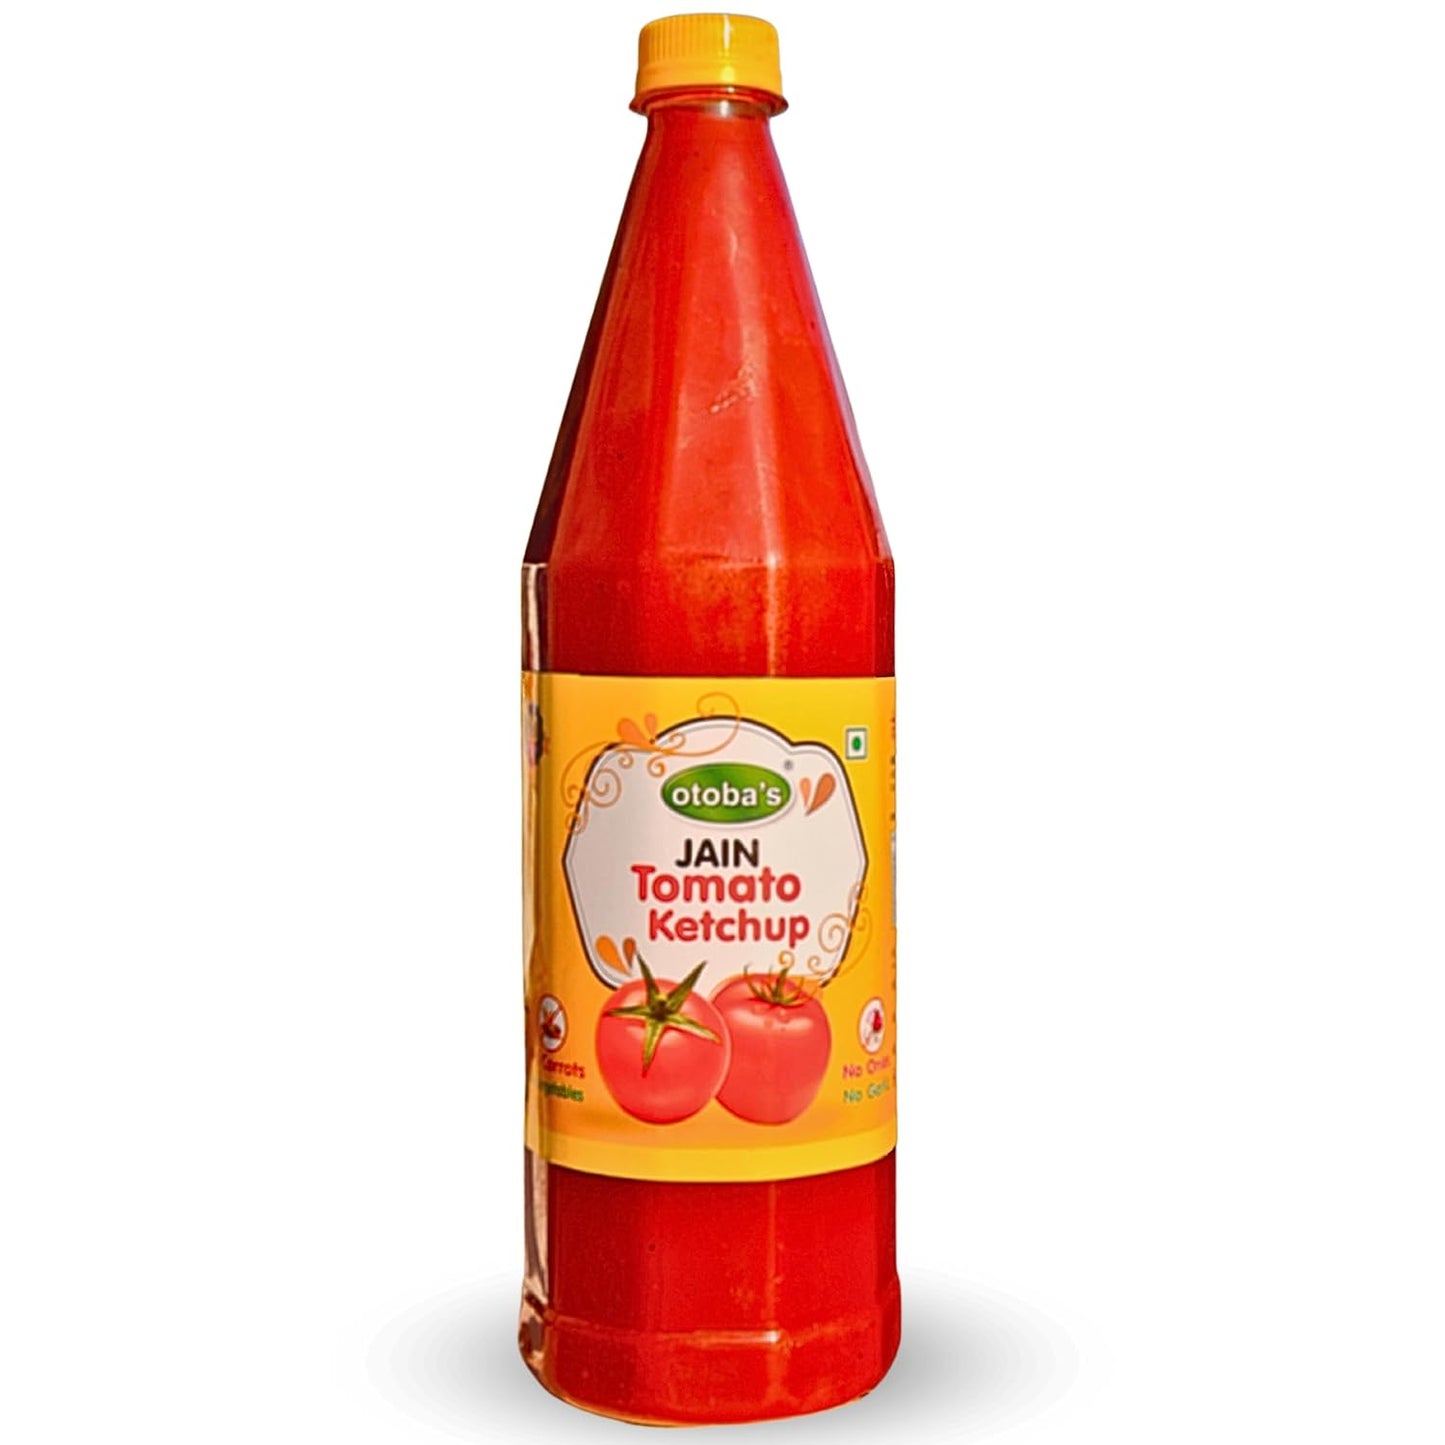 Jain Tomato Ketchup